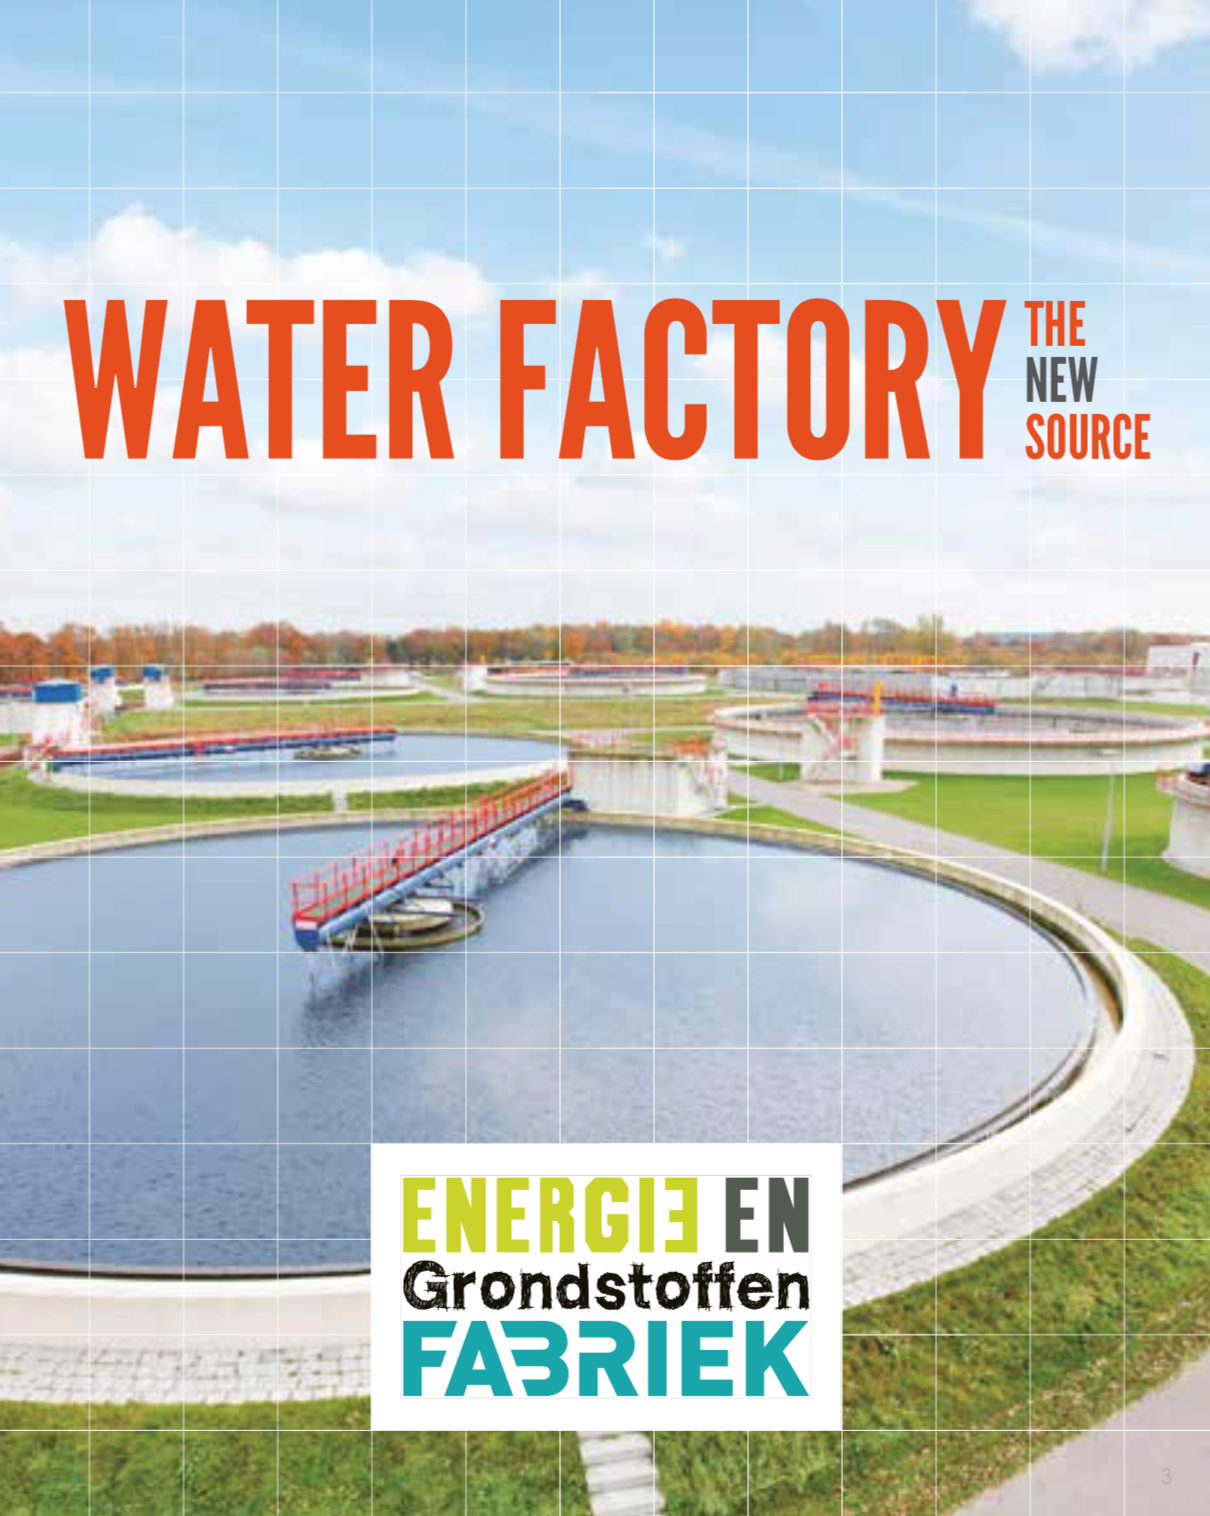 Voorkant inspiratieboekje 'Waterfabriek de nieuwe bron' (Engels)